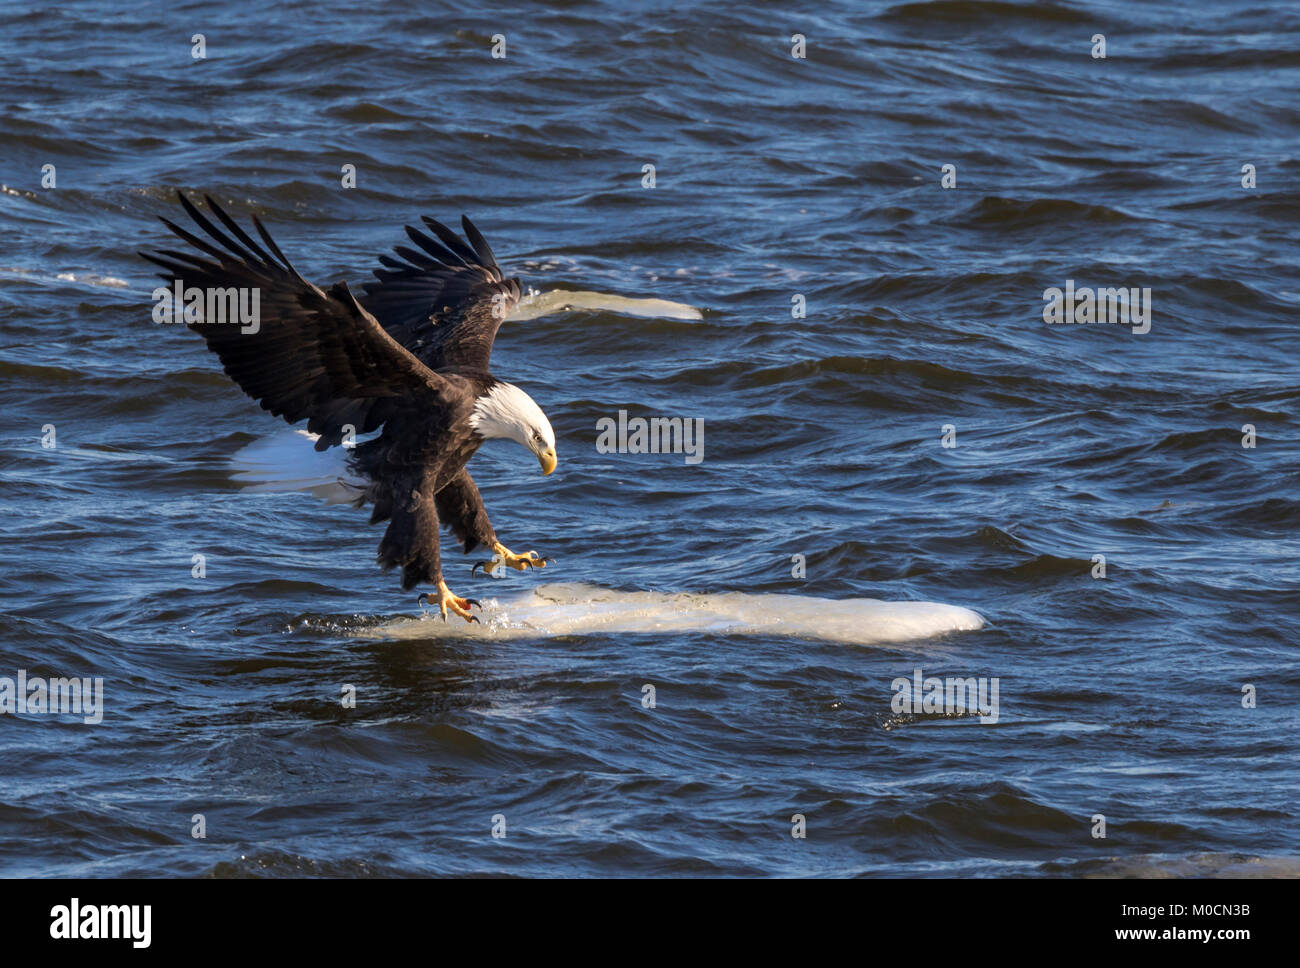 El águila calva (Haliaeetus leucocephalus) que aterrizaba en el hielo a la deriva, Mississippi River, Iowa, EE.UU. Foto de stock